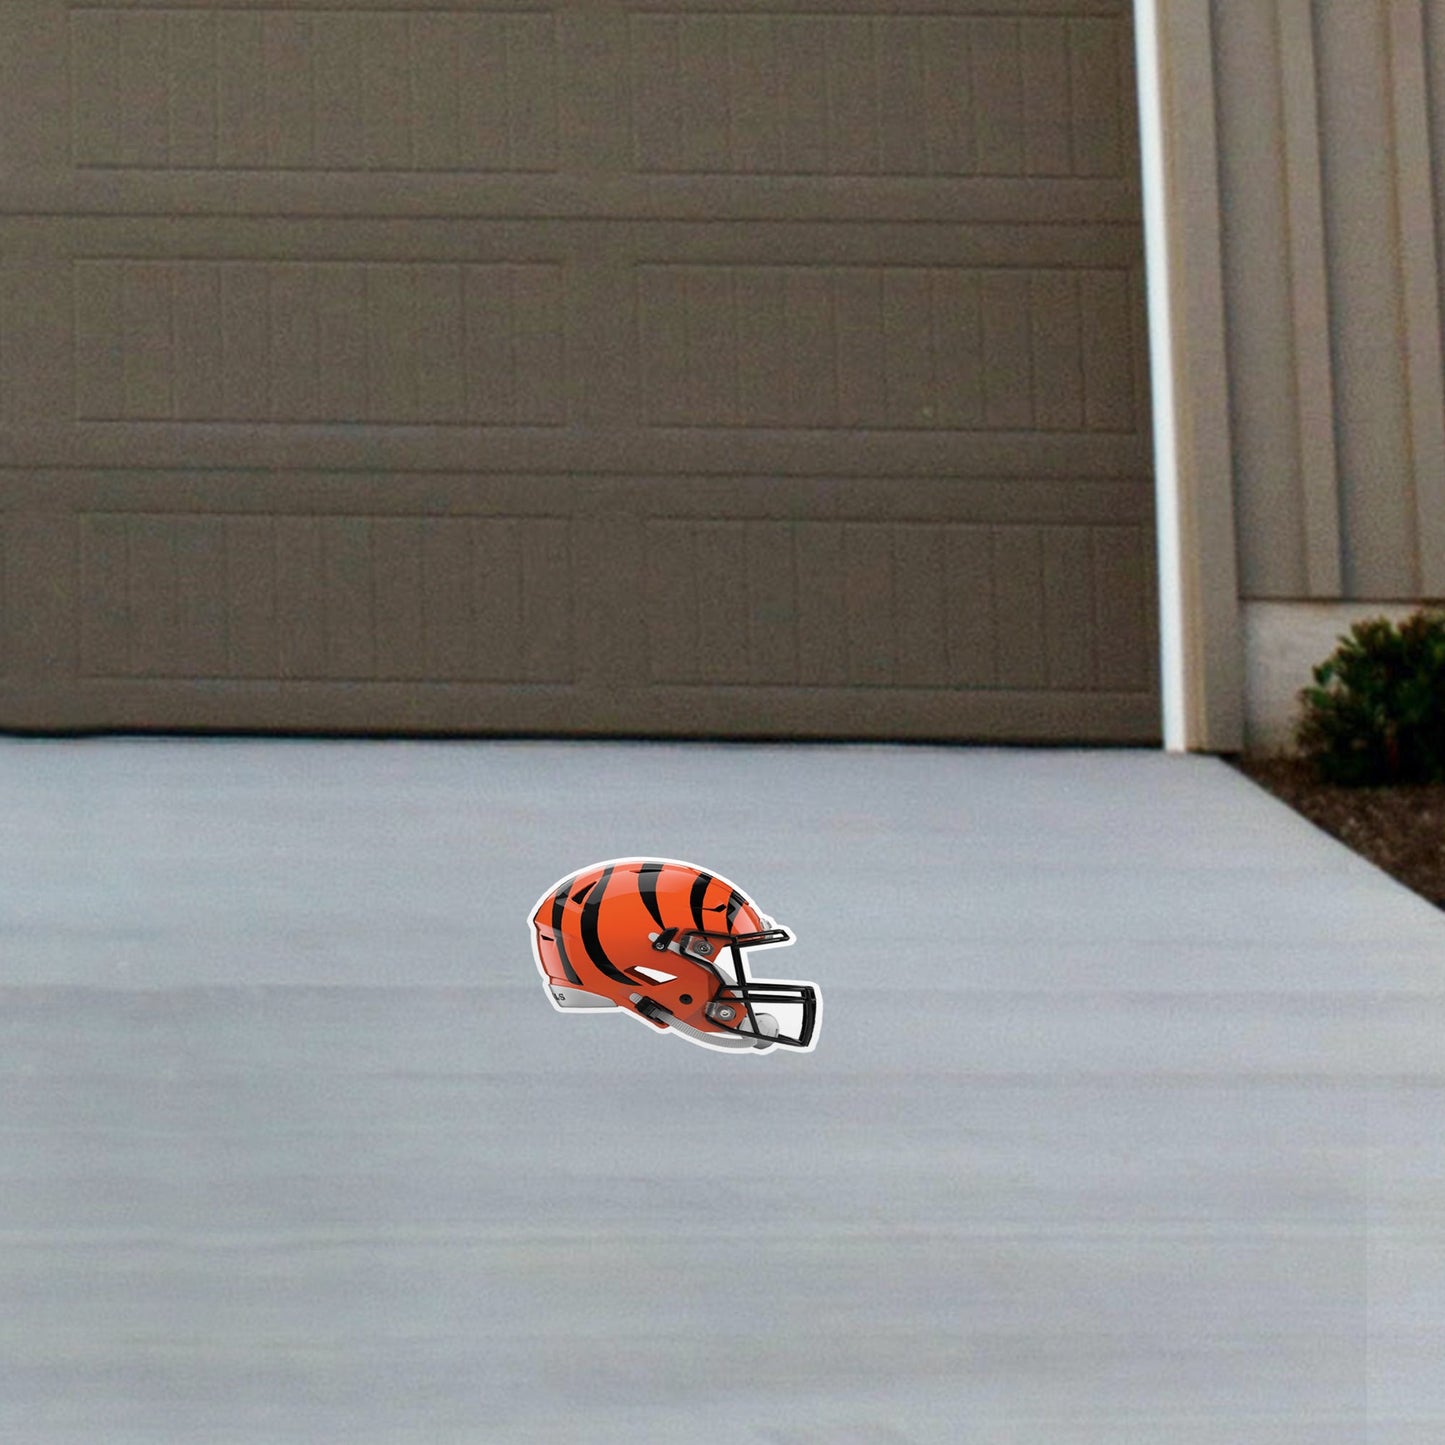 Cincinnati Bengals: Outdoor Helmet - Officially Licensed NFL Outdoor Graphic